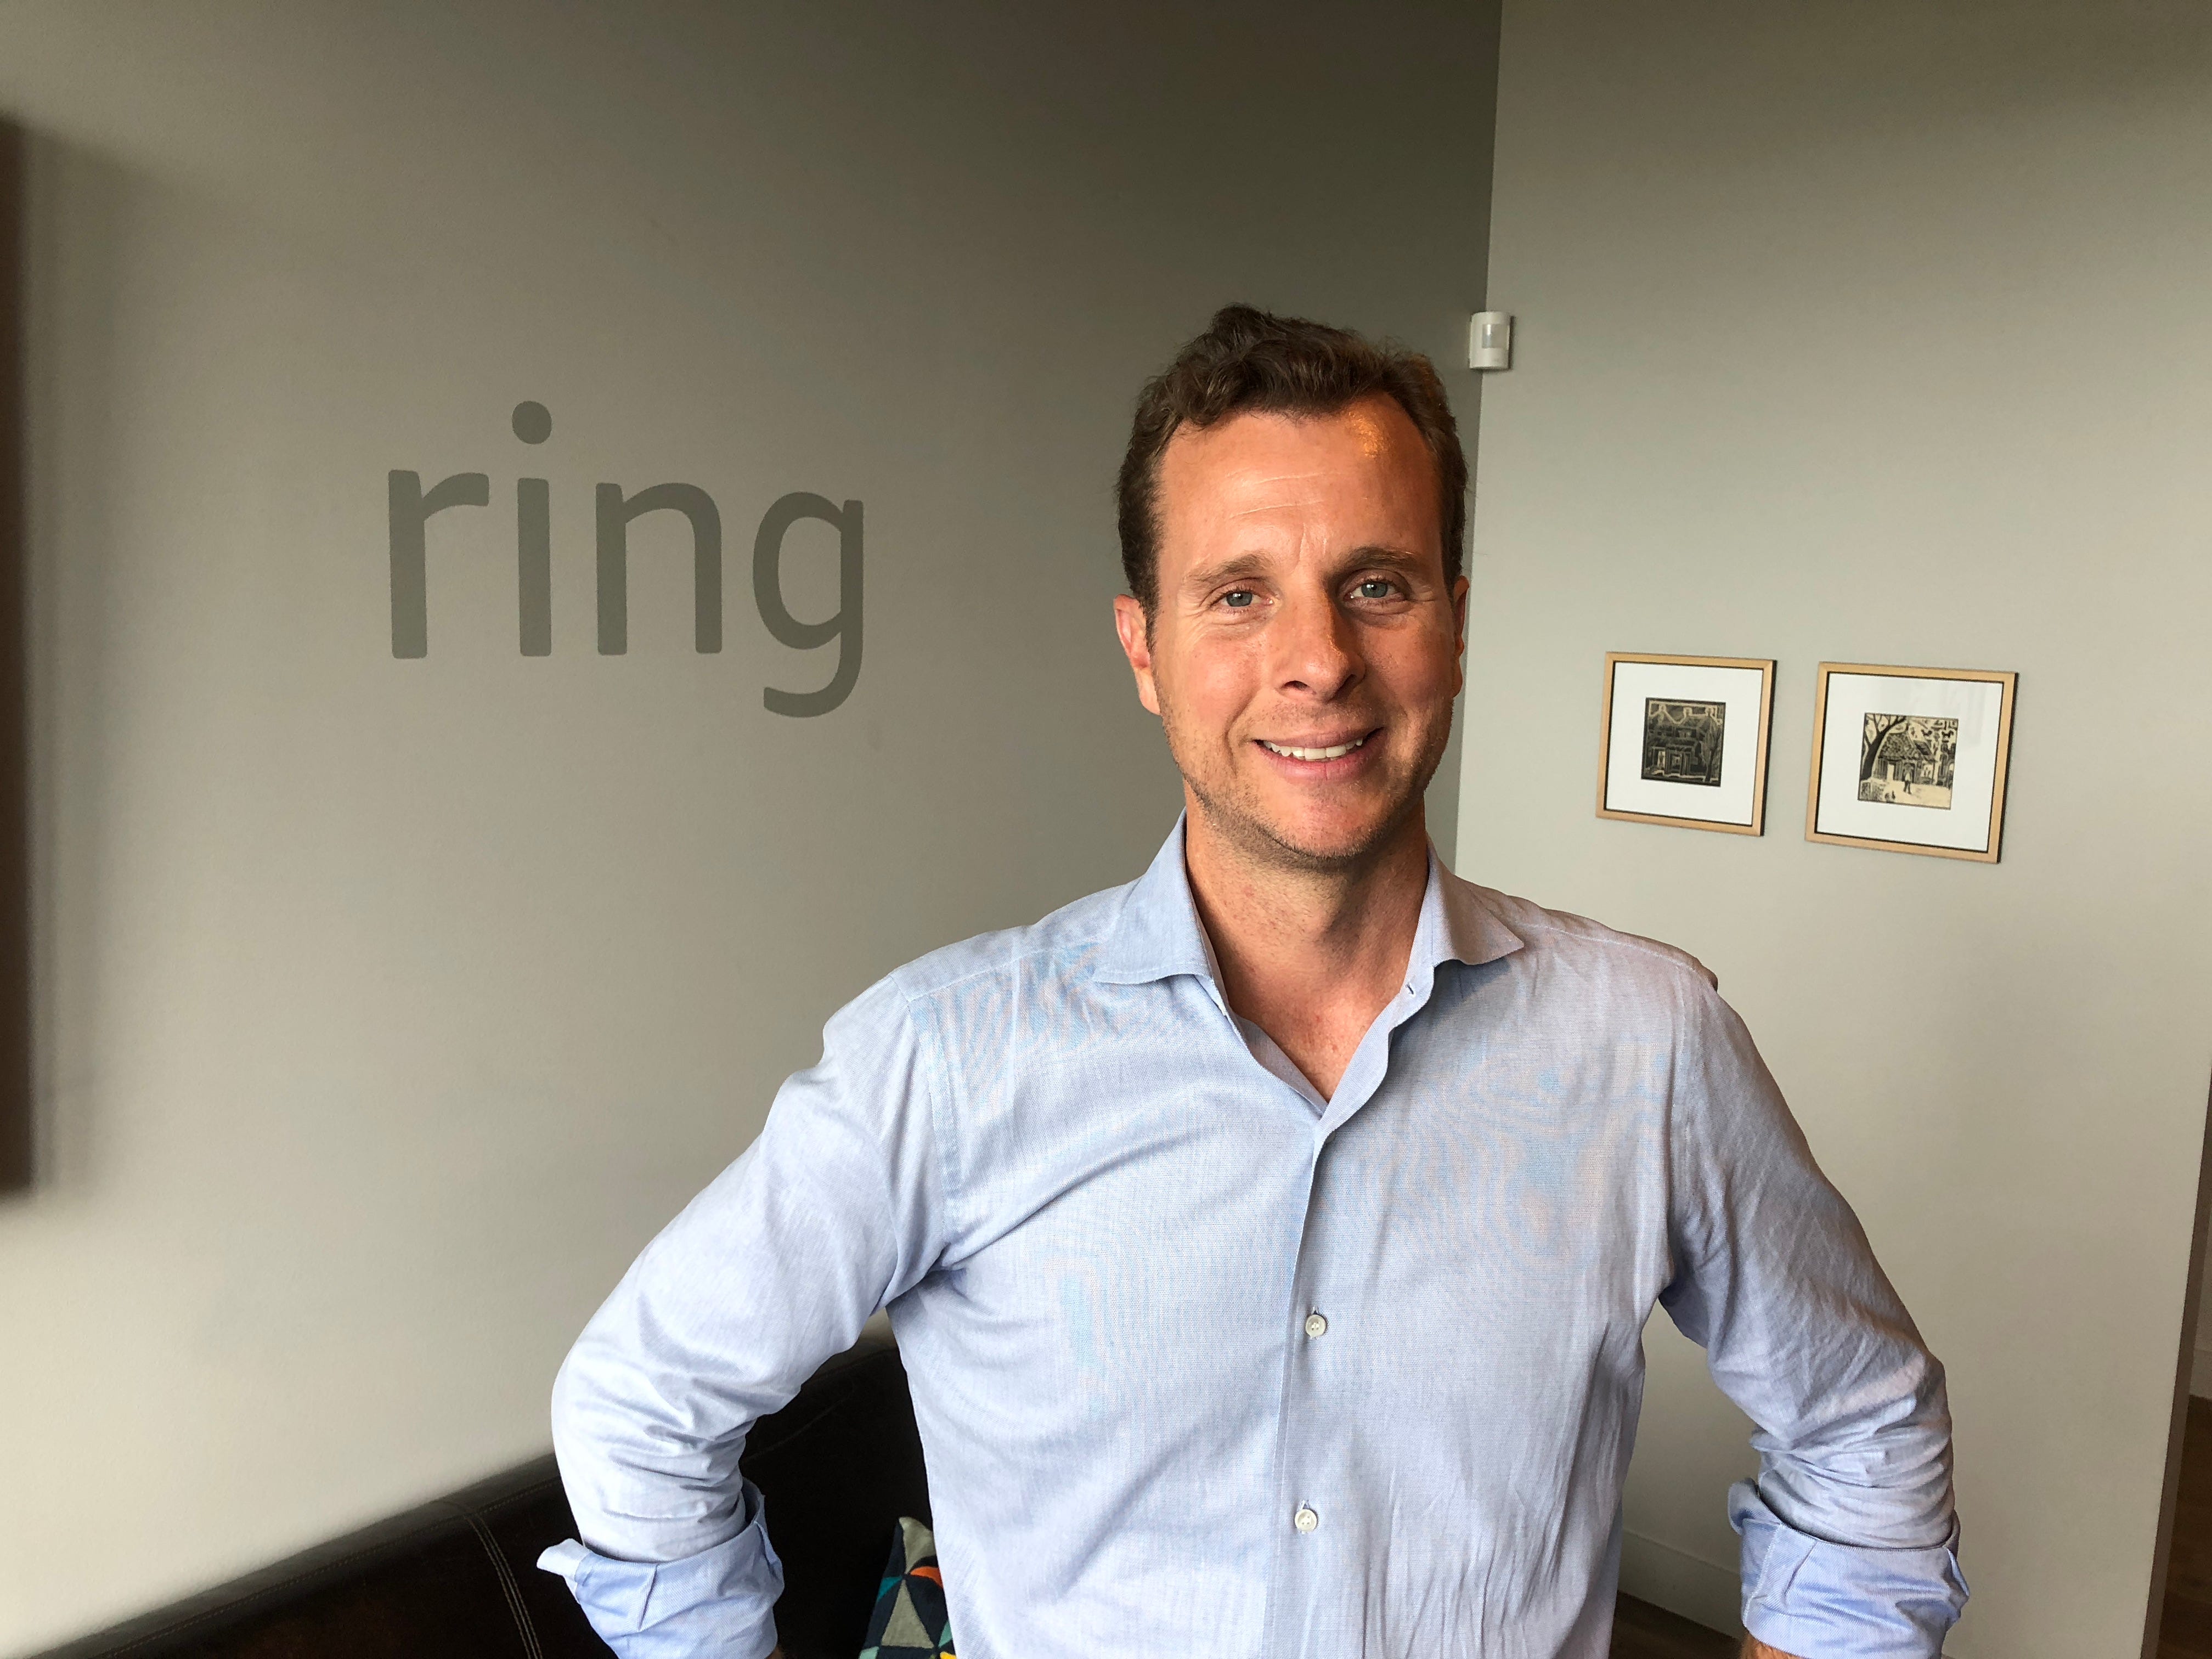 Shark Tank: Ring doorbell founder 